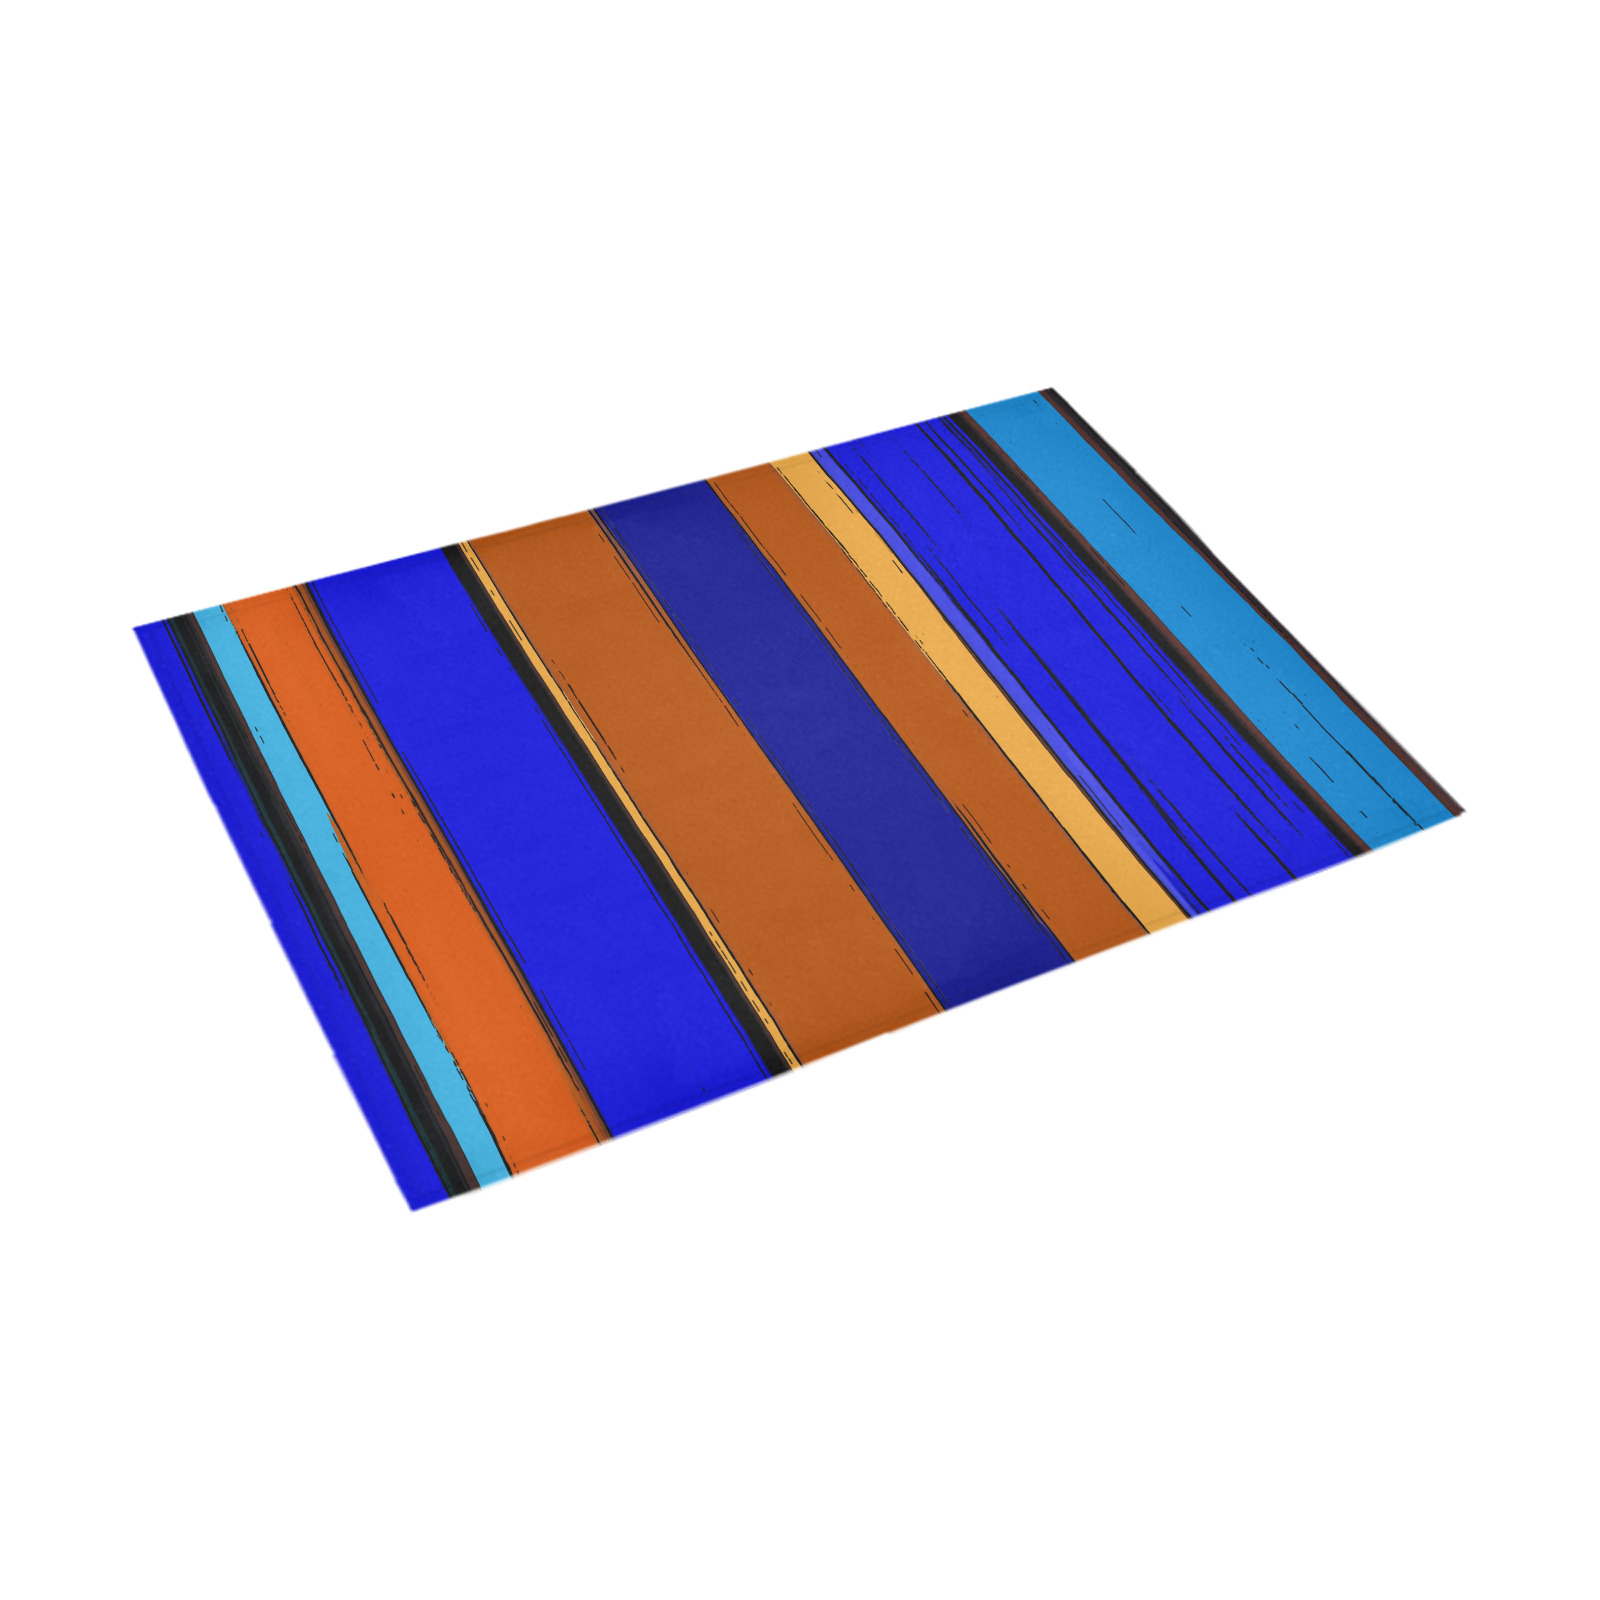 Abstract Blue And Orange 930 Azalea Doormat 30" x 18" (Sponge Material)